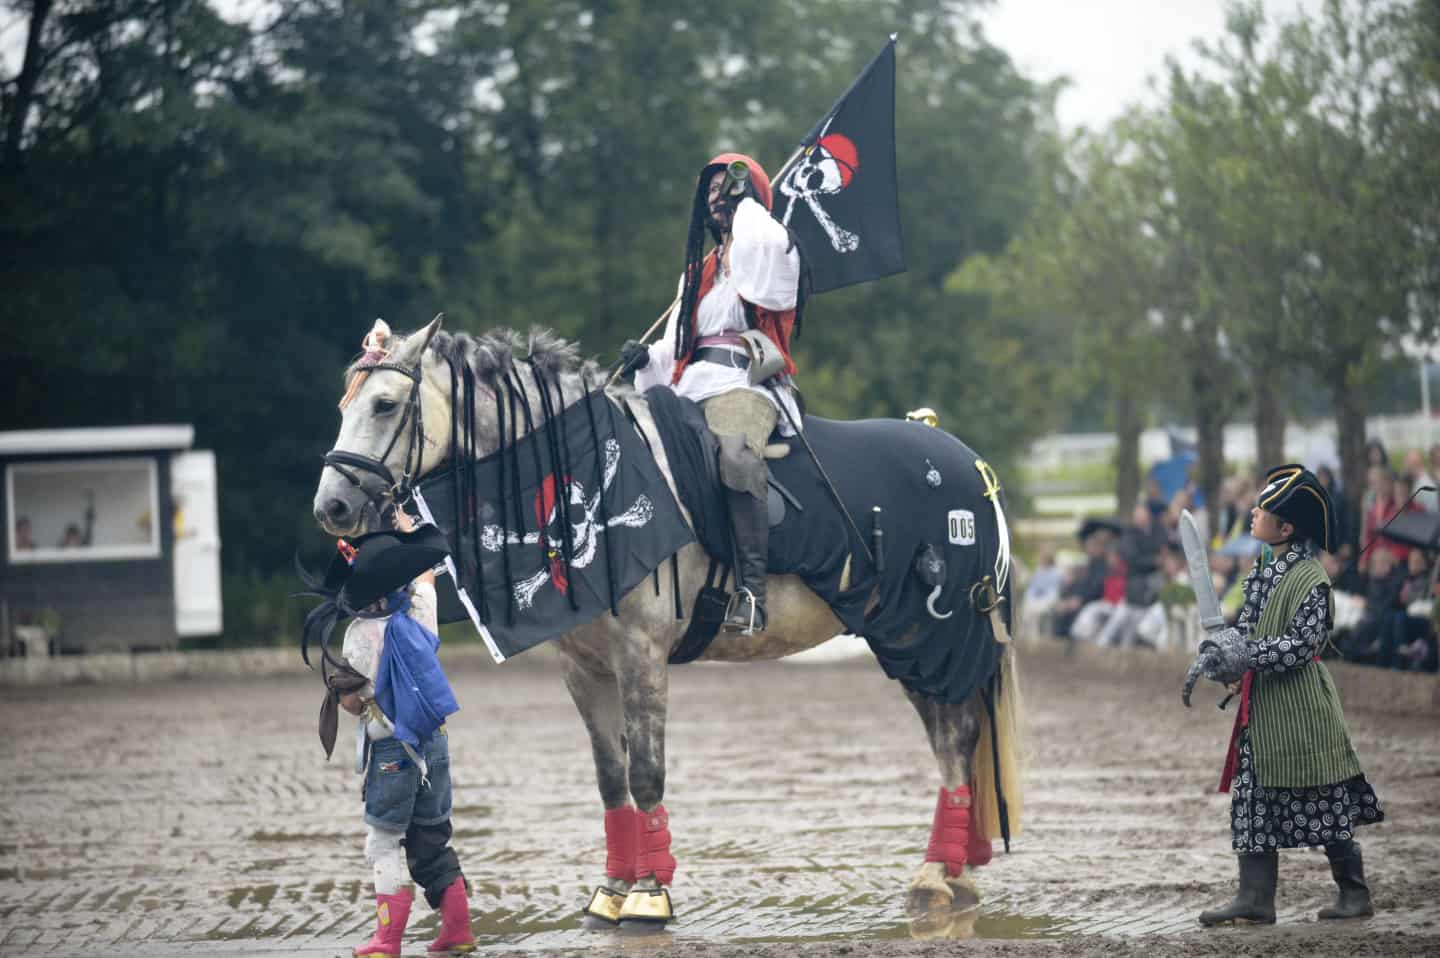 Fotos: Heste i fastelavnskostumer - Esbjergrytter med i toppen som Jack Sparrow jv.dk